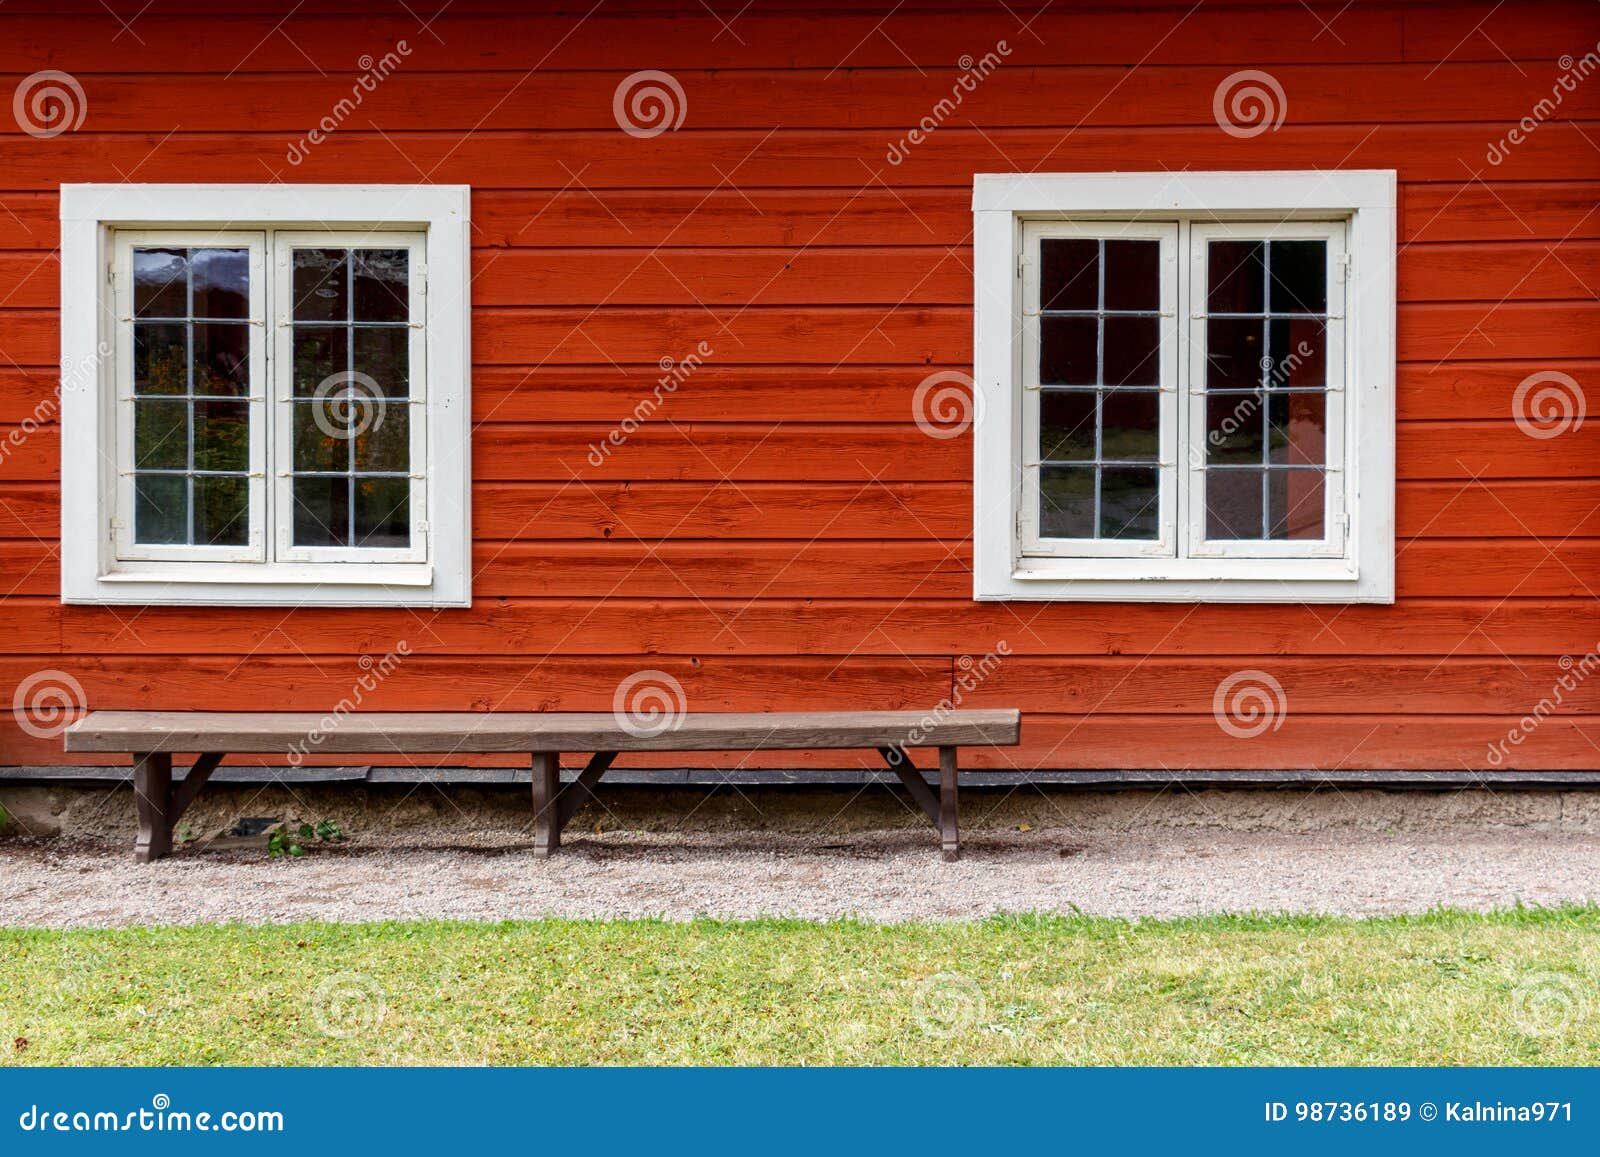 Una Casa De Campo Vieja Sueca Típica En Rojo Con Las Ventanas Blancas  Imagen de archivo - Imagen de viejo, hermoso: 98736189